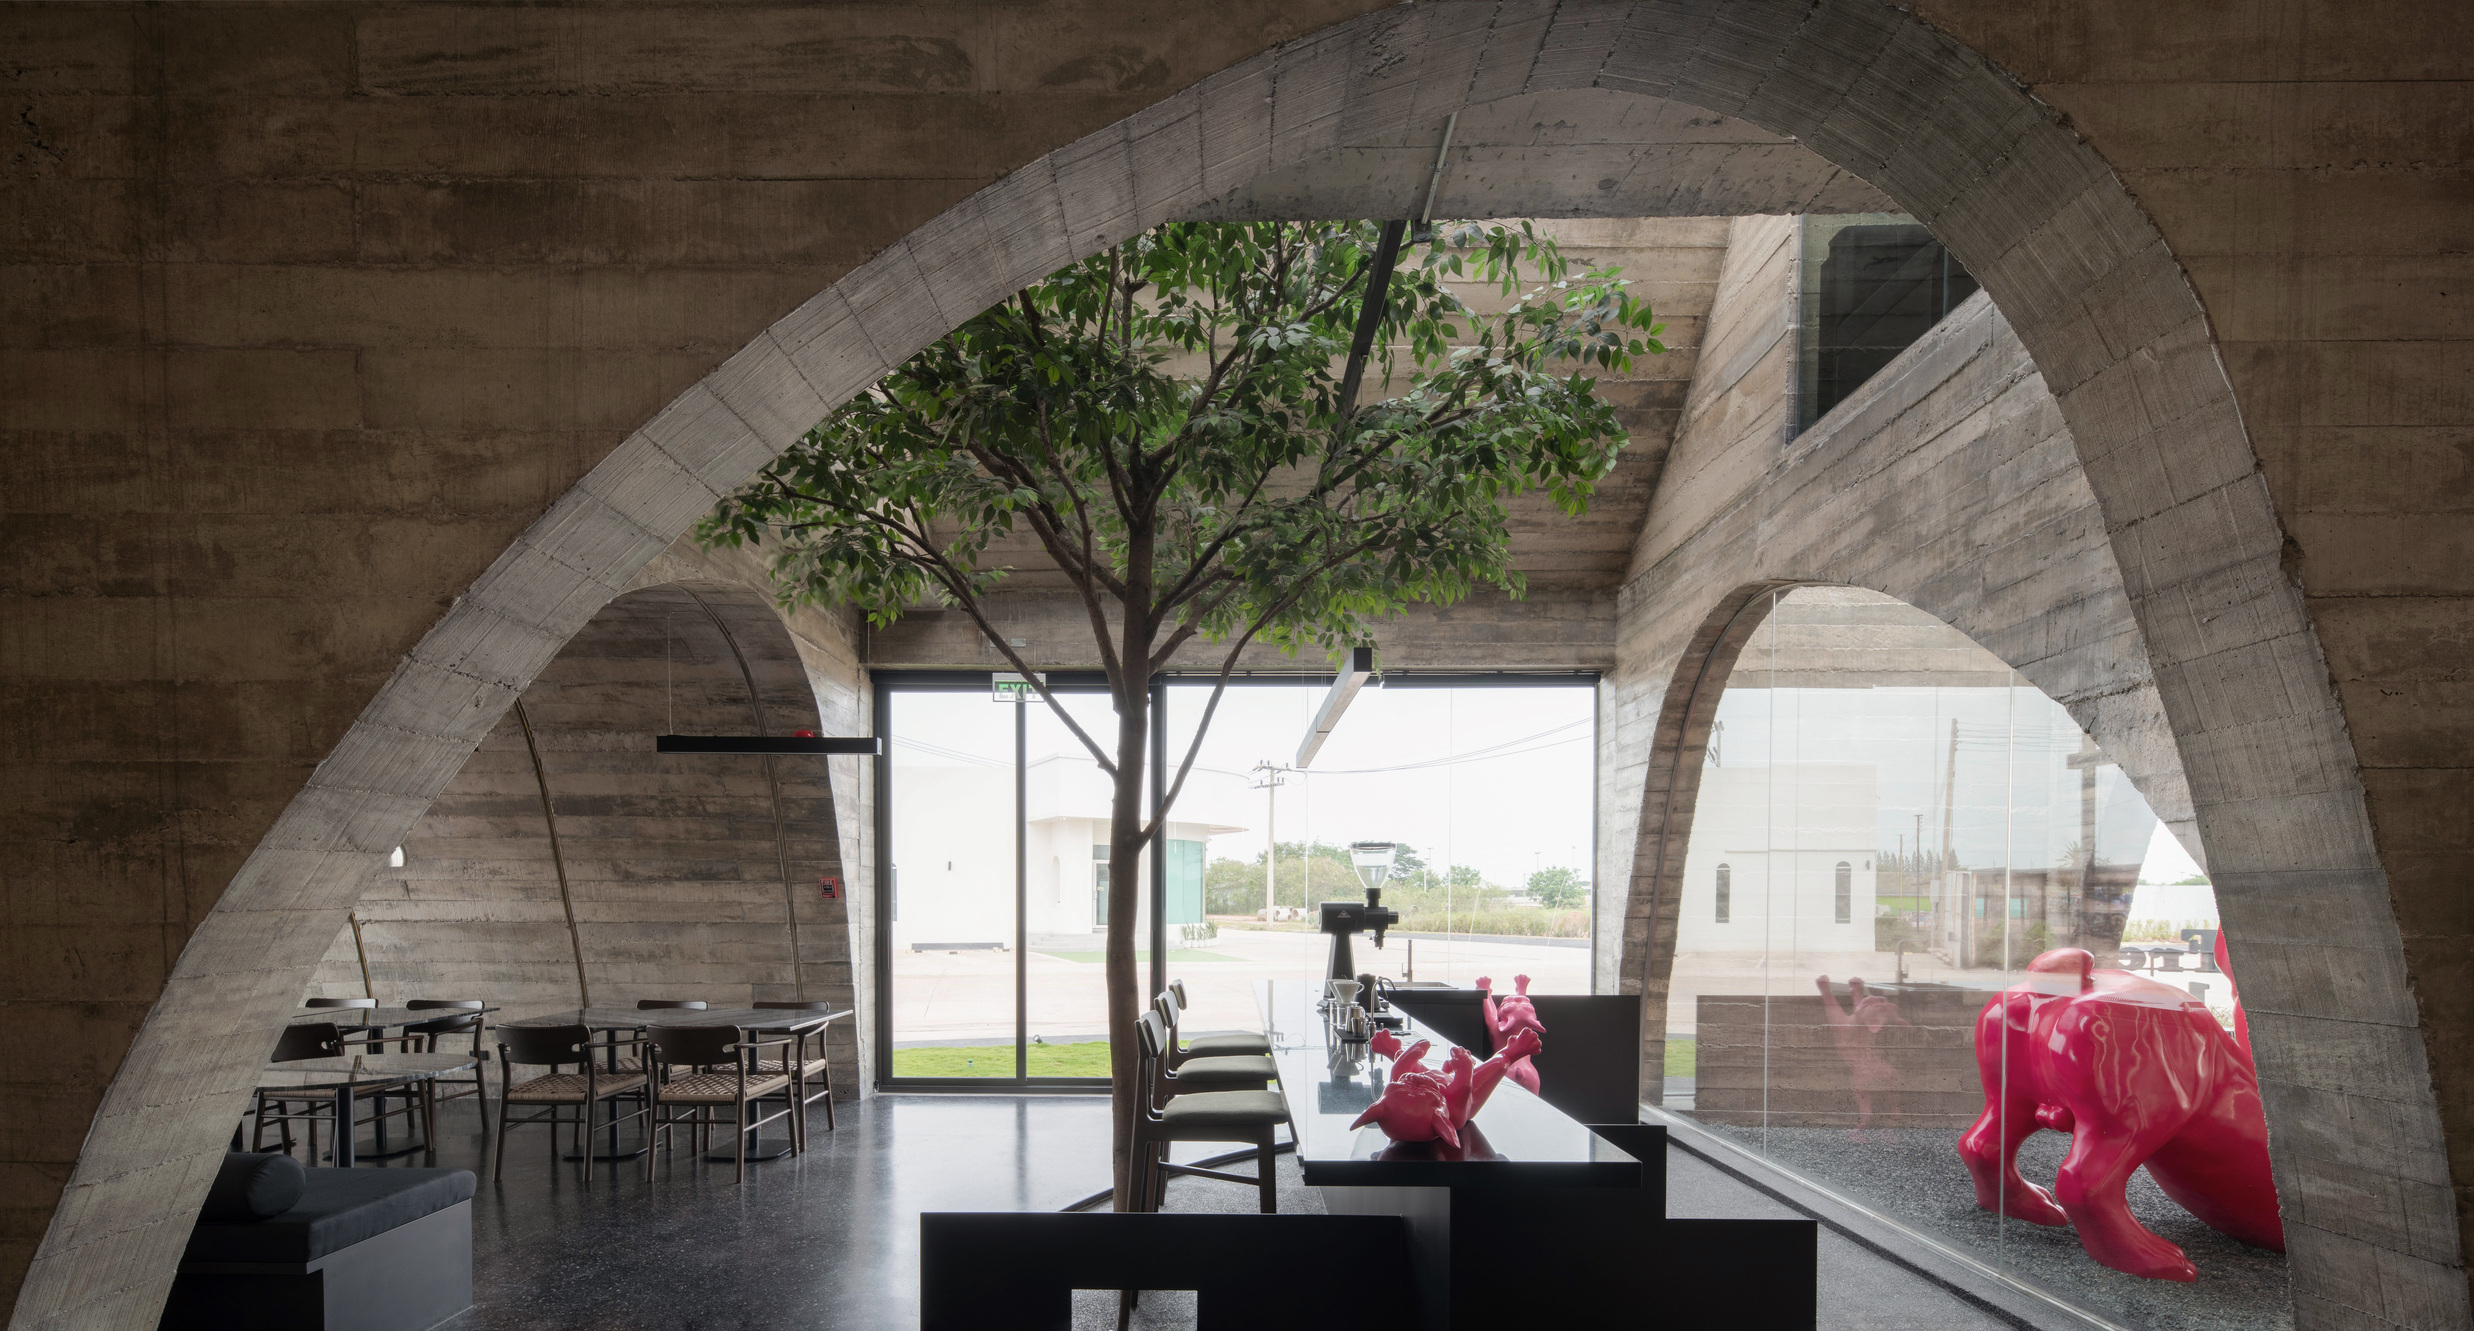 在充滿多層次拱形結構的建築內，特別以一棵綠樹和天窗創造自然生機意象。